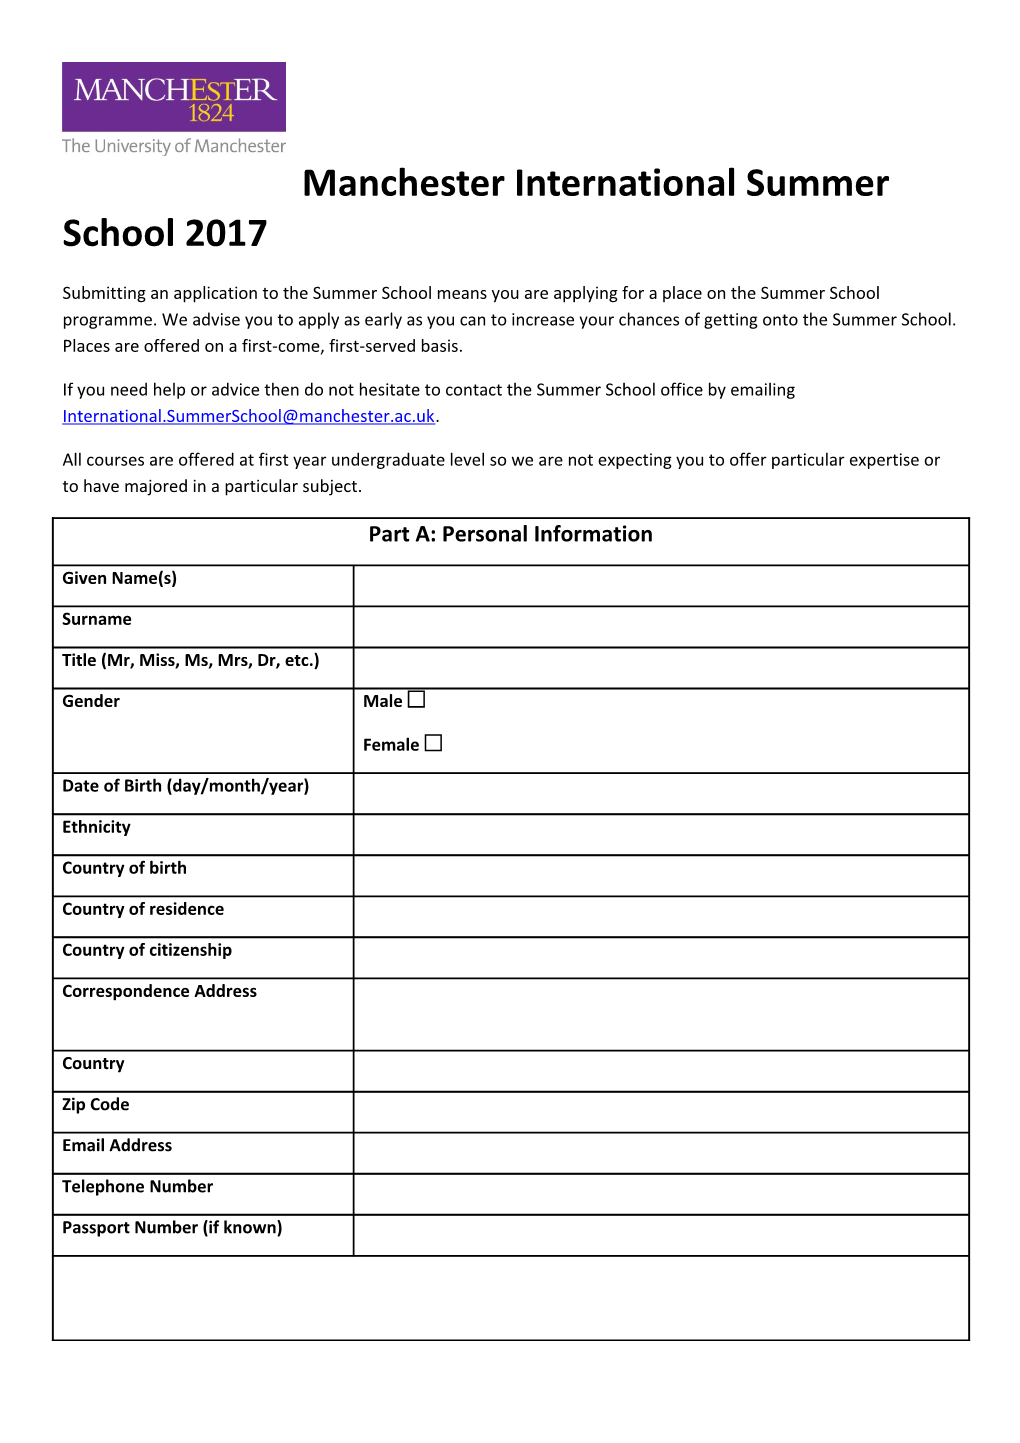 Manchester International Summer School 2017